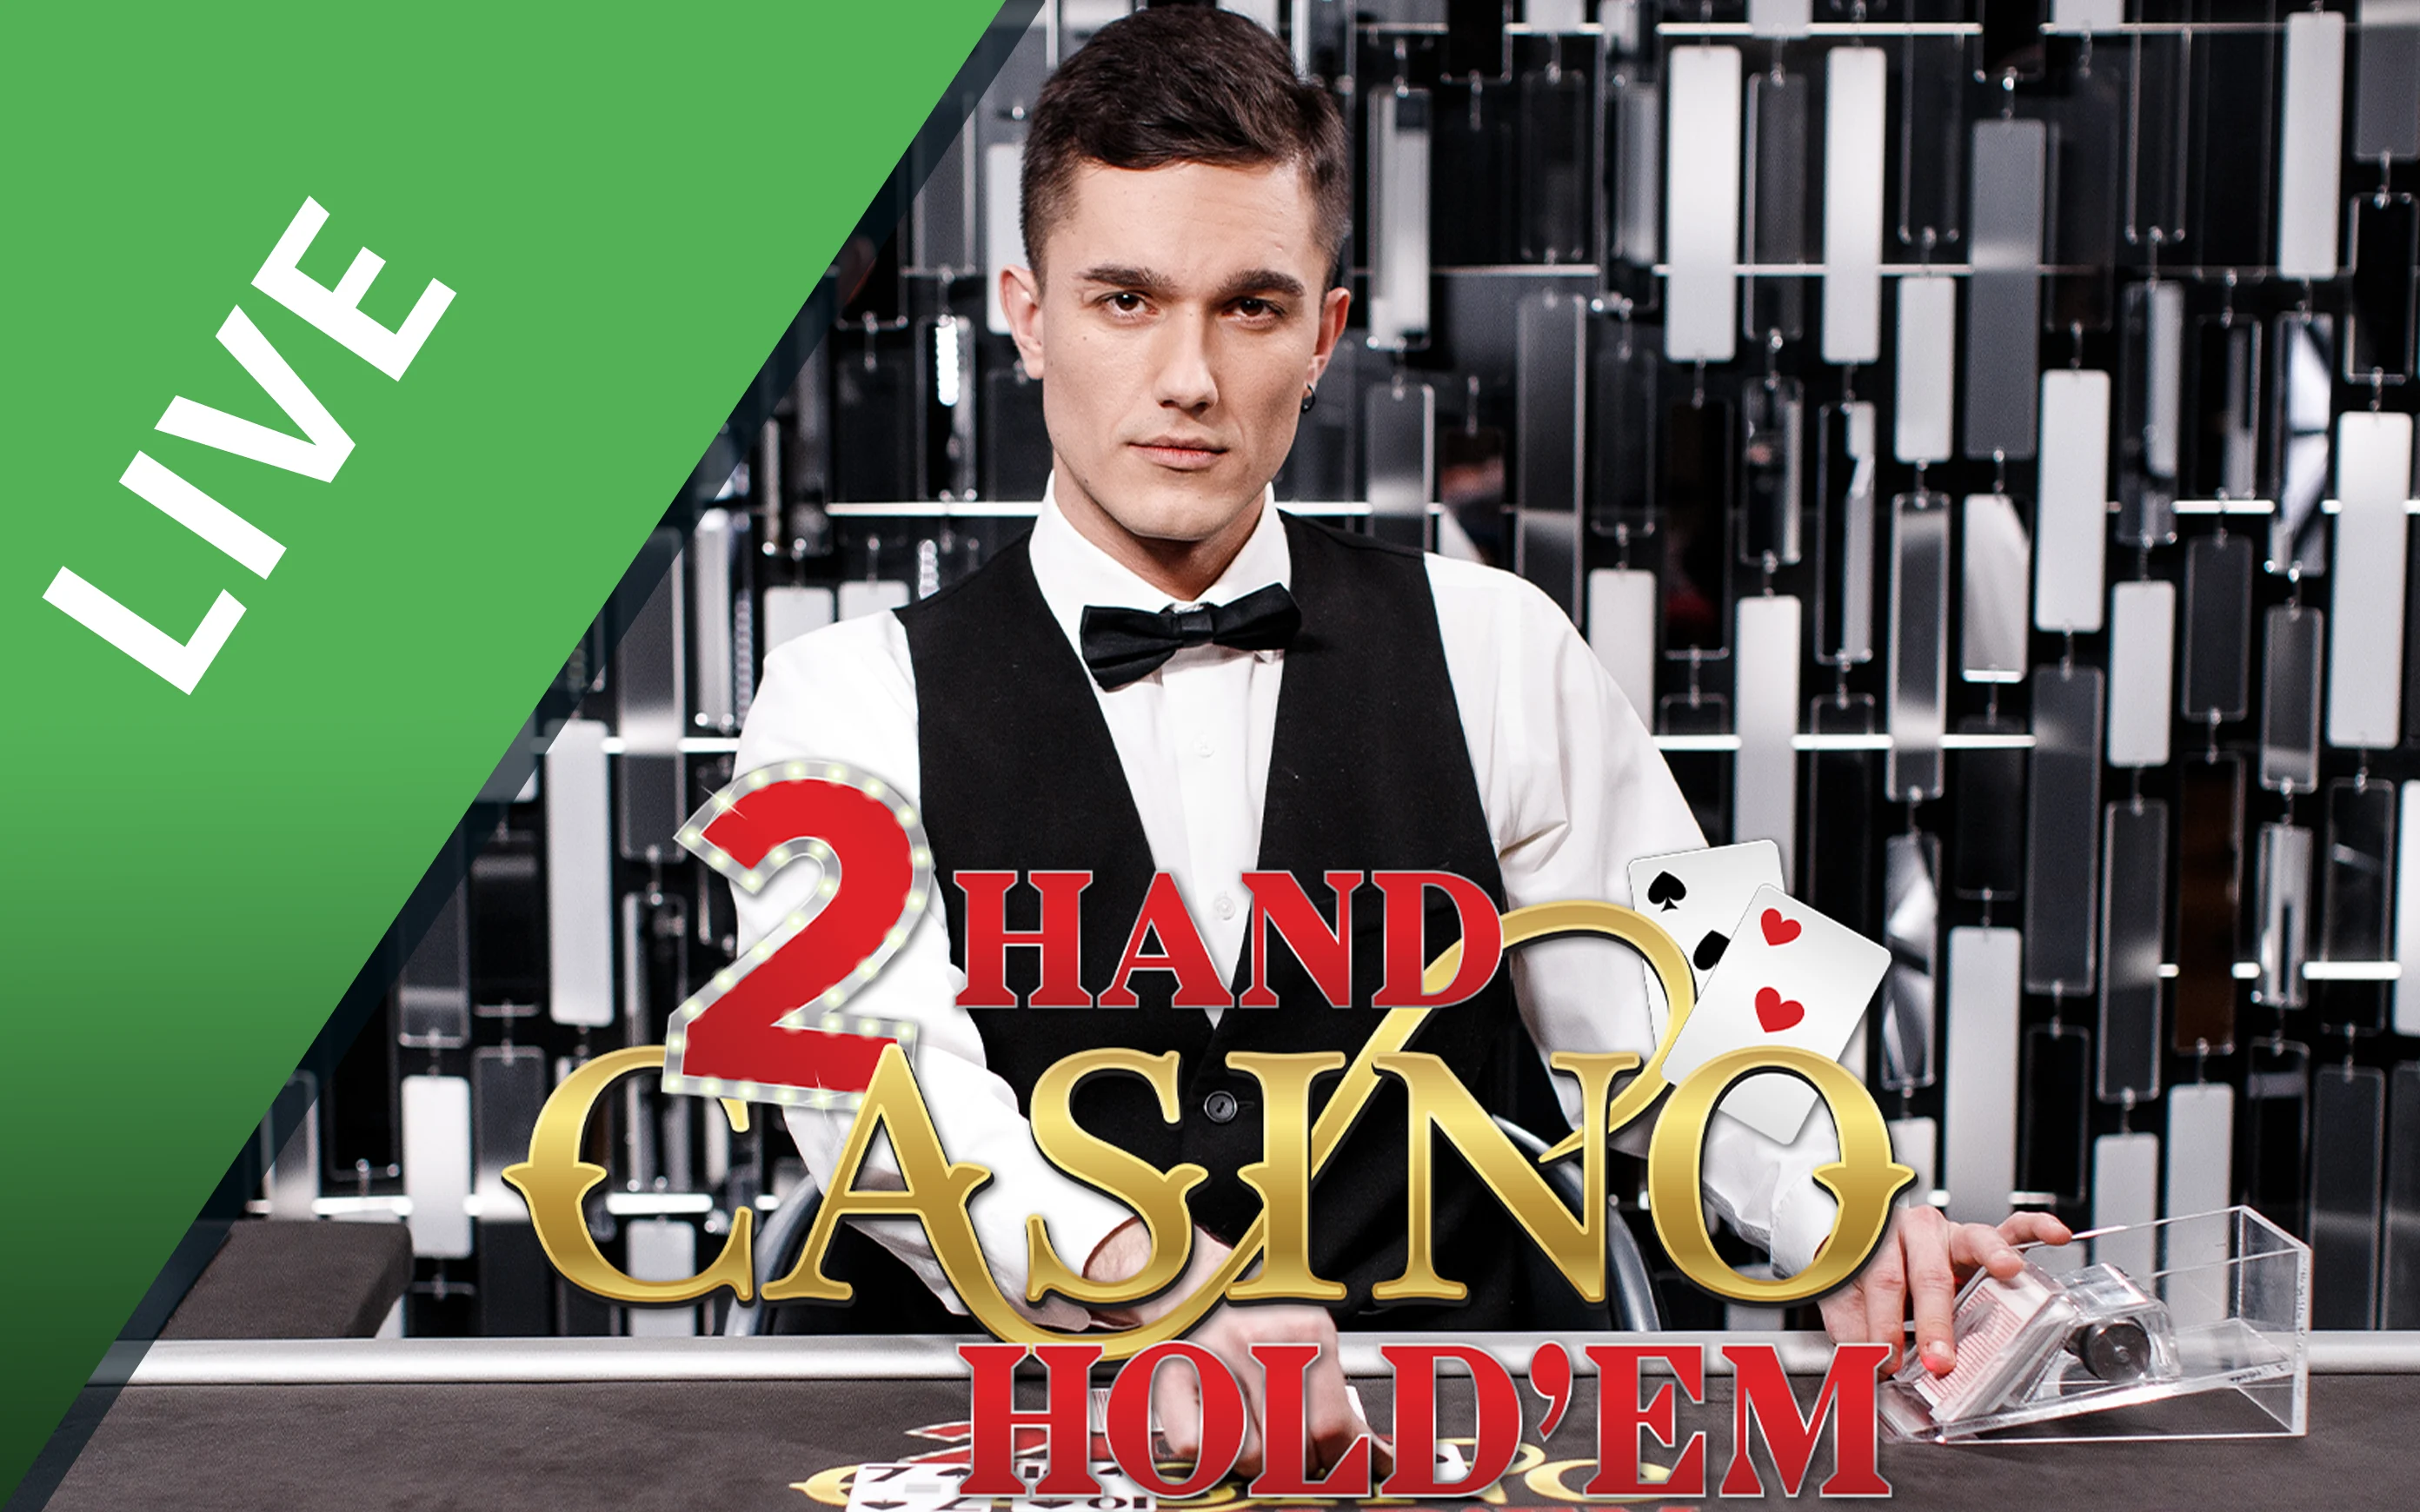 Παίξτε Double Hand Casino Holdem στο online καζίνο Starcasino.be